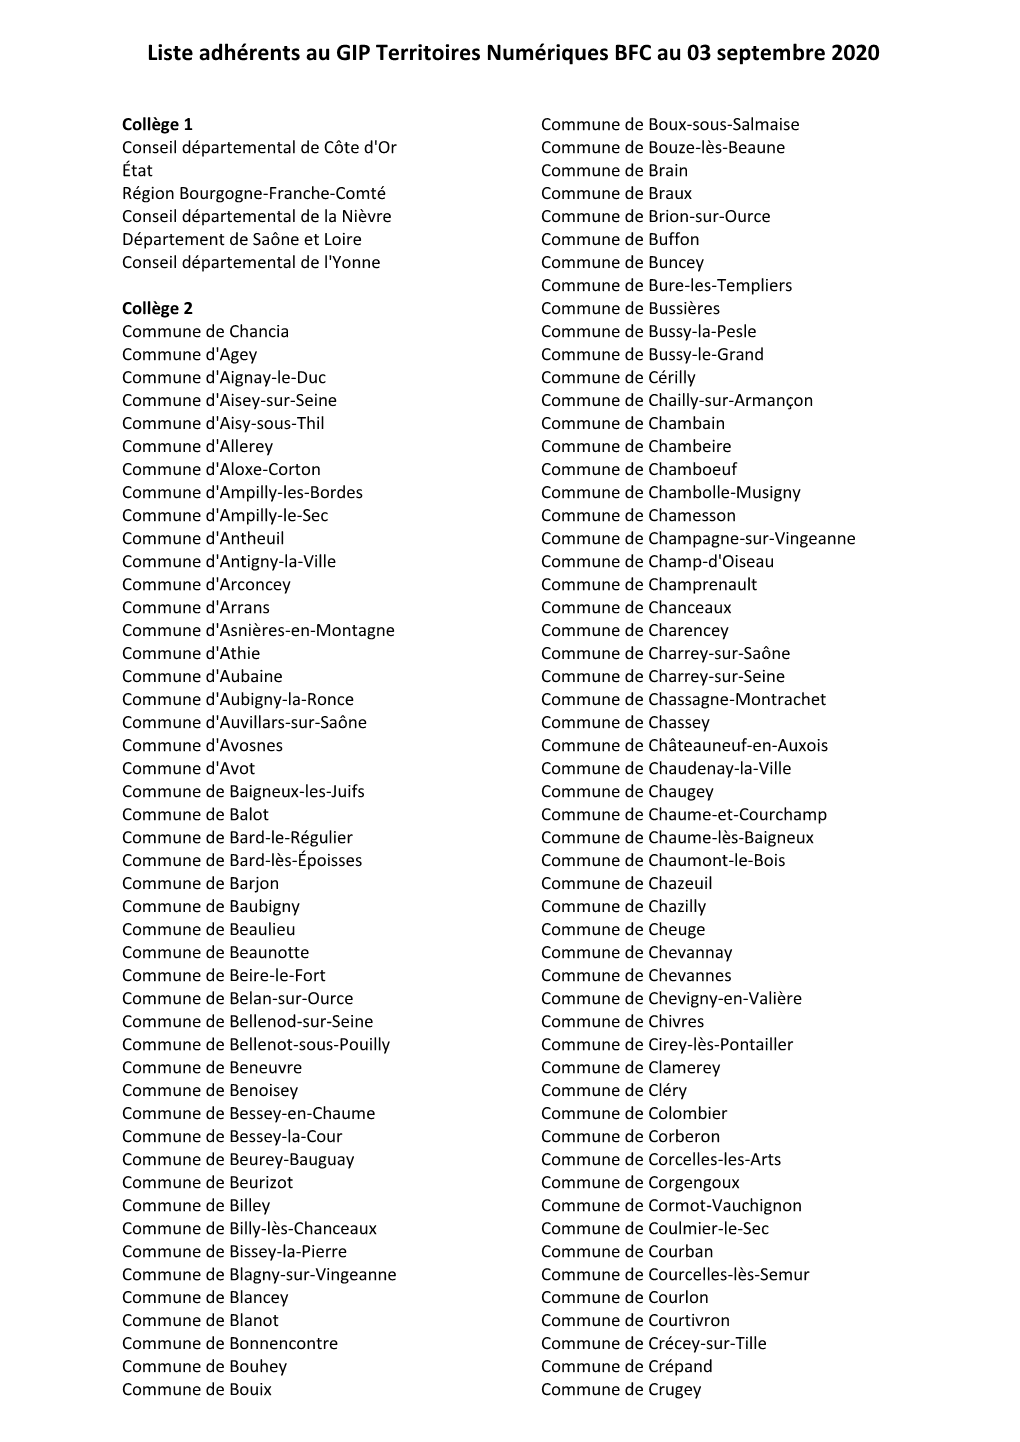 Liste Adhérents Au GIP Territoires Numériques BFC Au 03 Septembre 2020